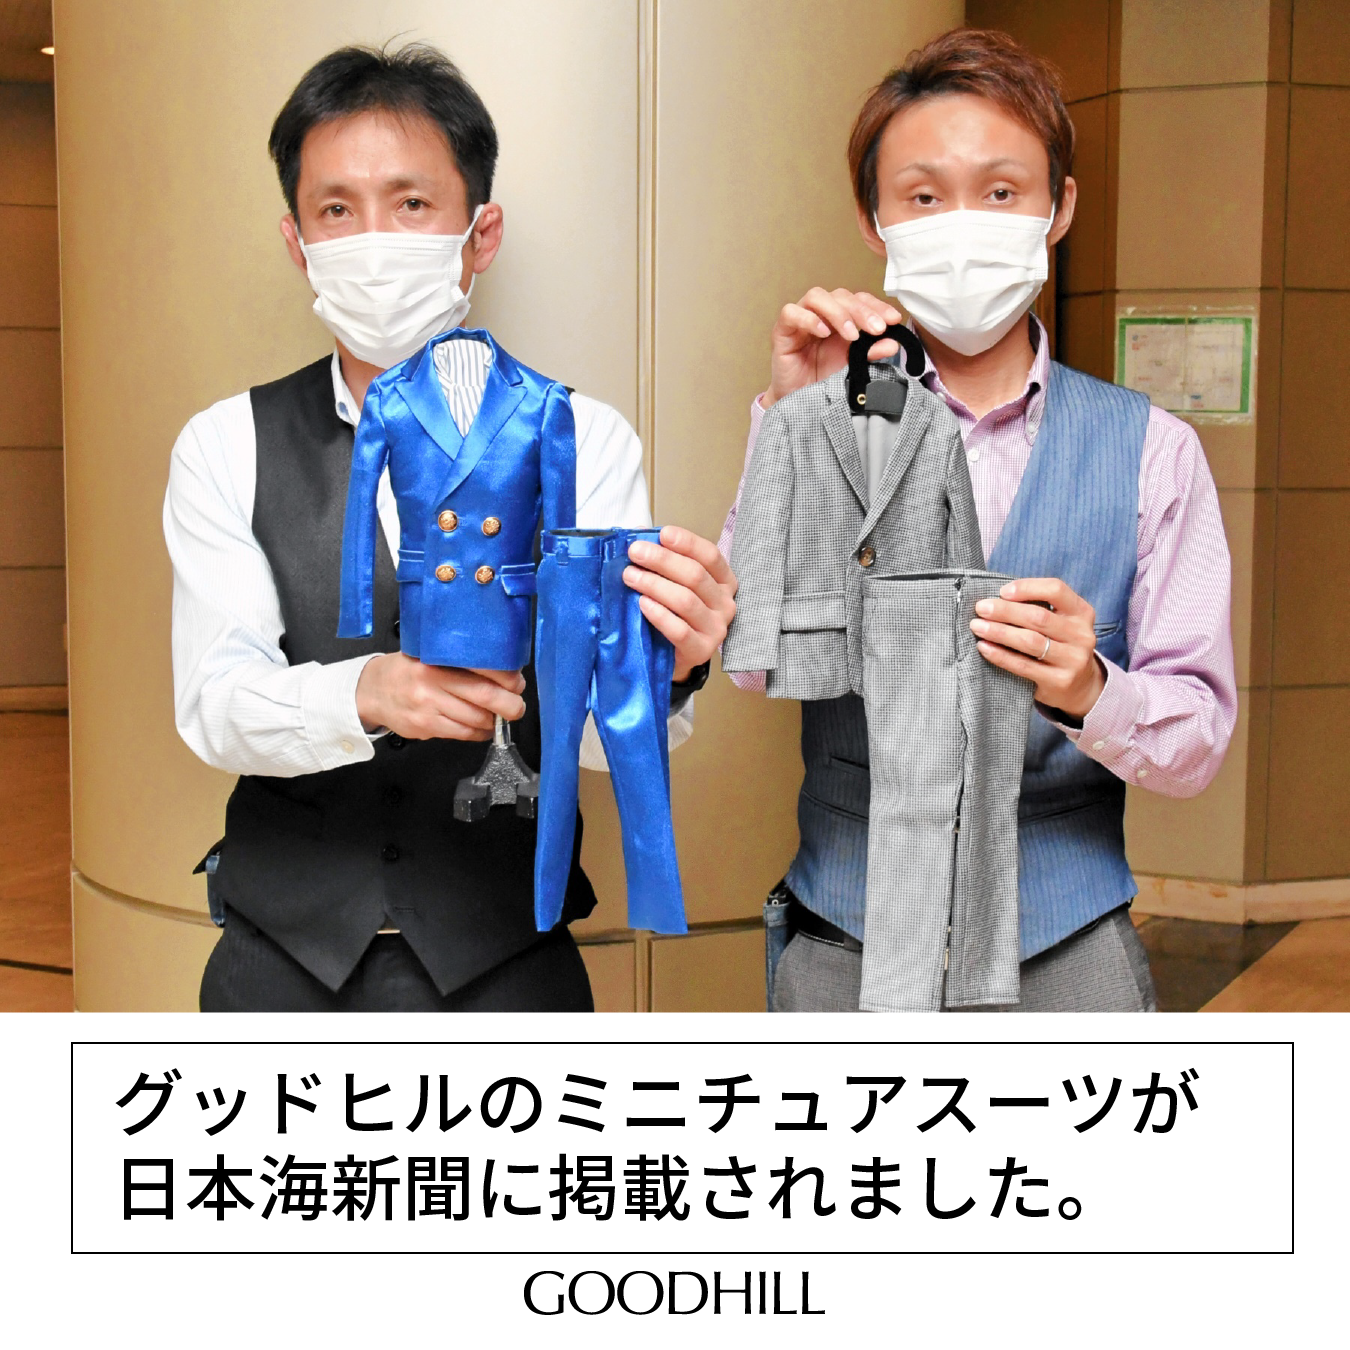 グッドヒルのミニチュアスーツが日本海新聞に掲載されました。サムネイル